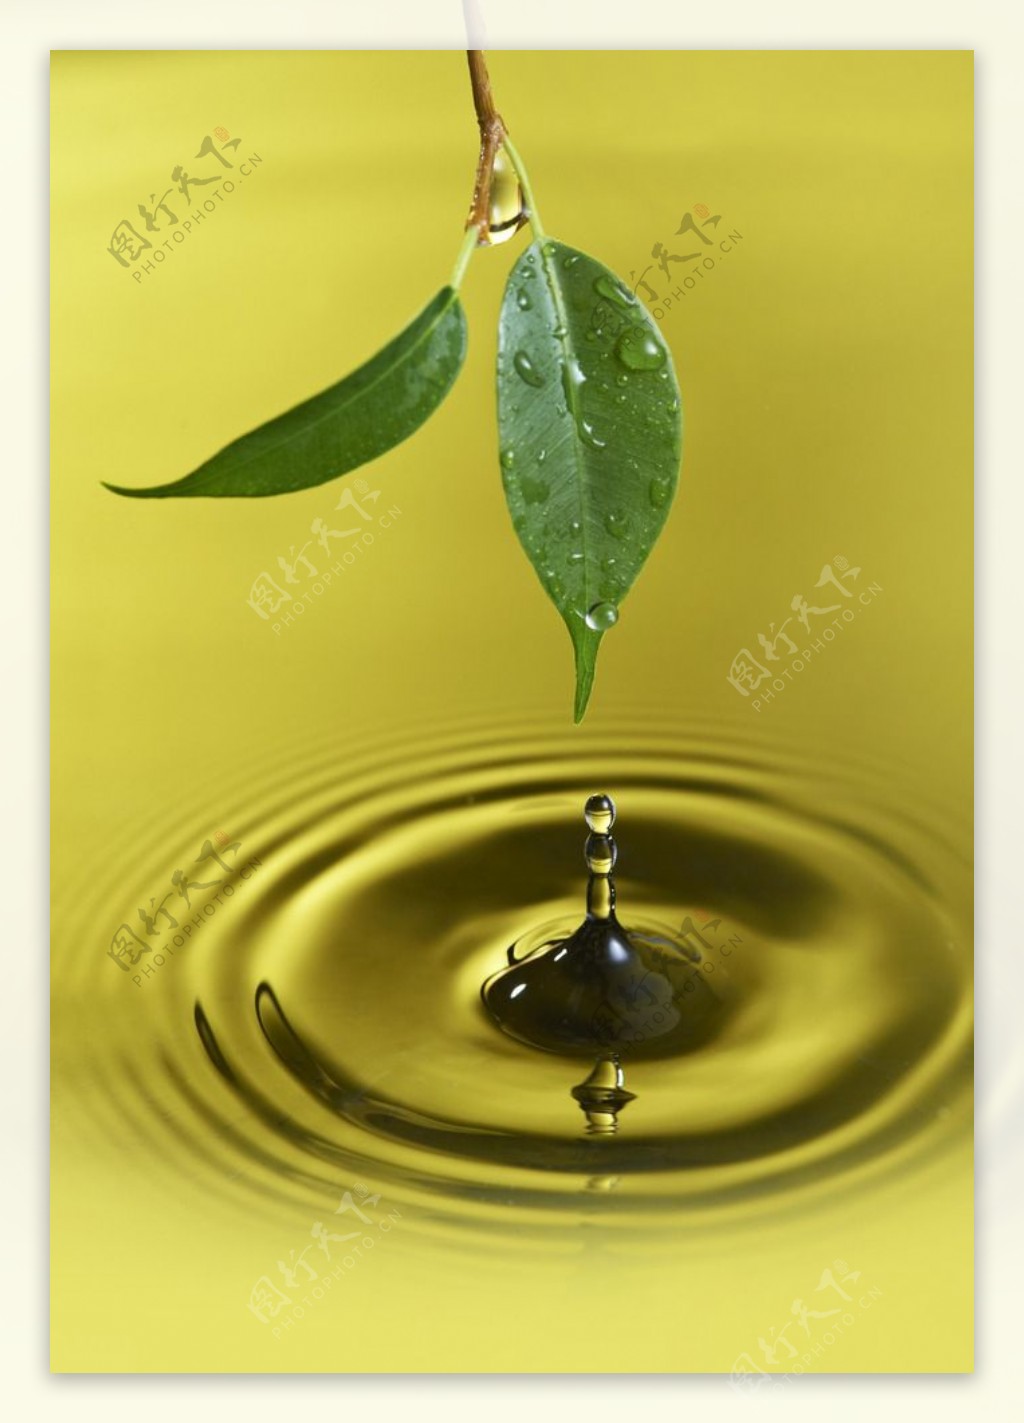 叶子水滴图片